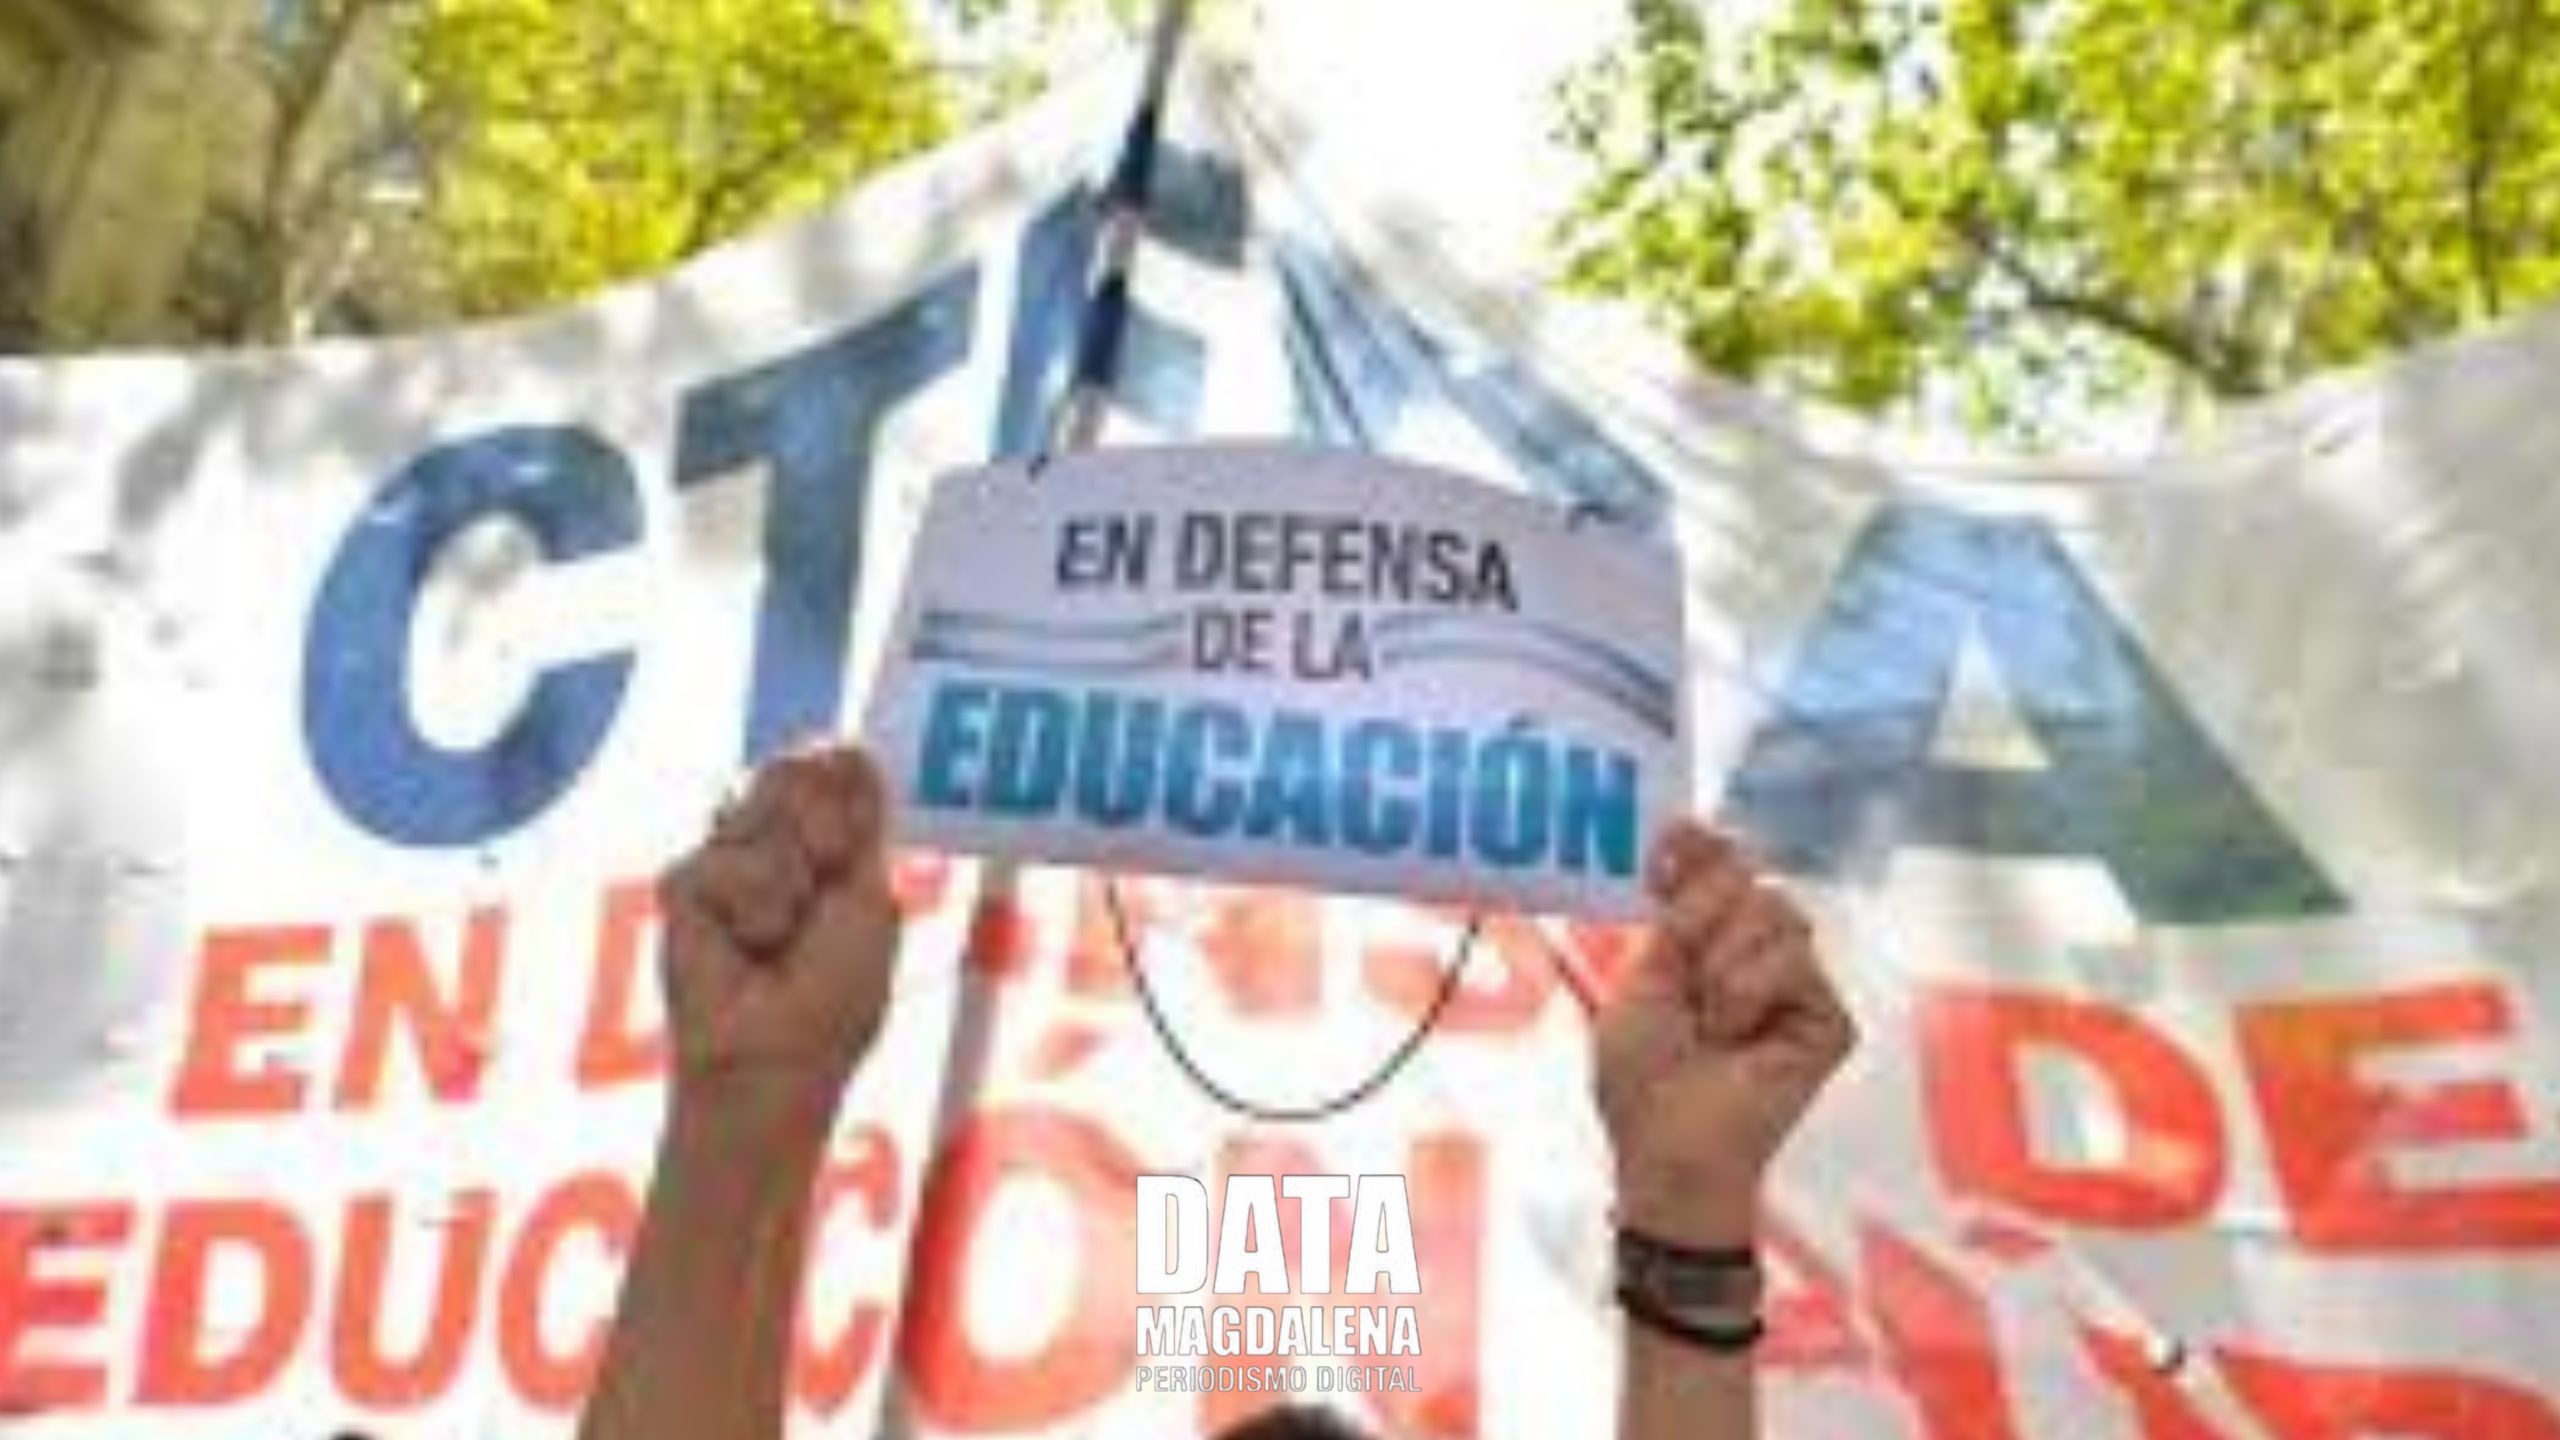 Leguizamon: “El Presidente de la nación ha decidido desfinanciar el sistema educativo”